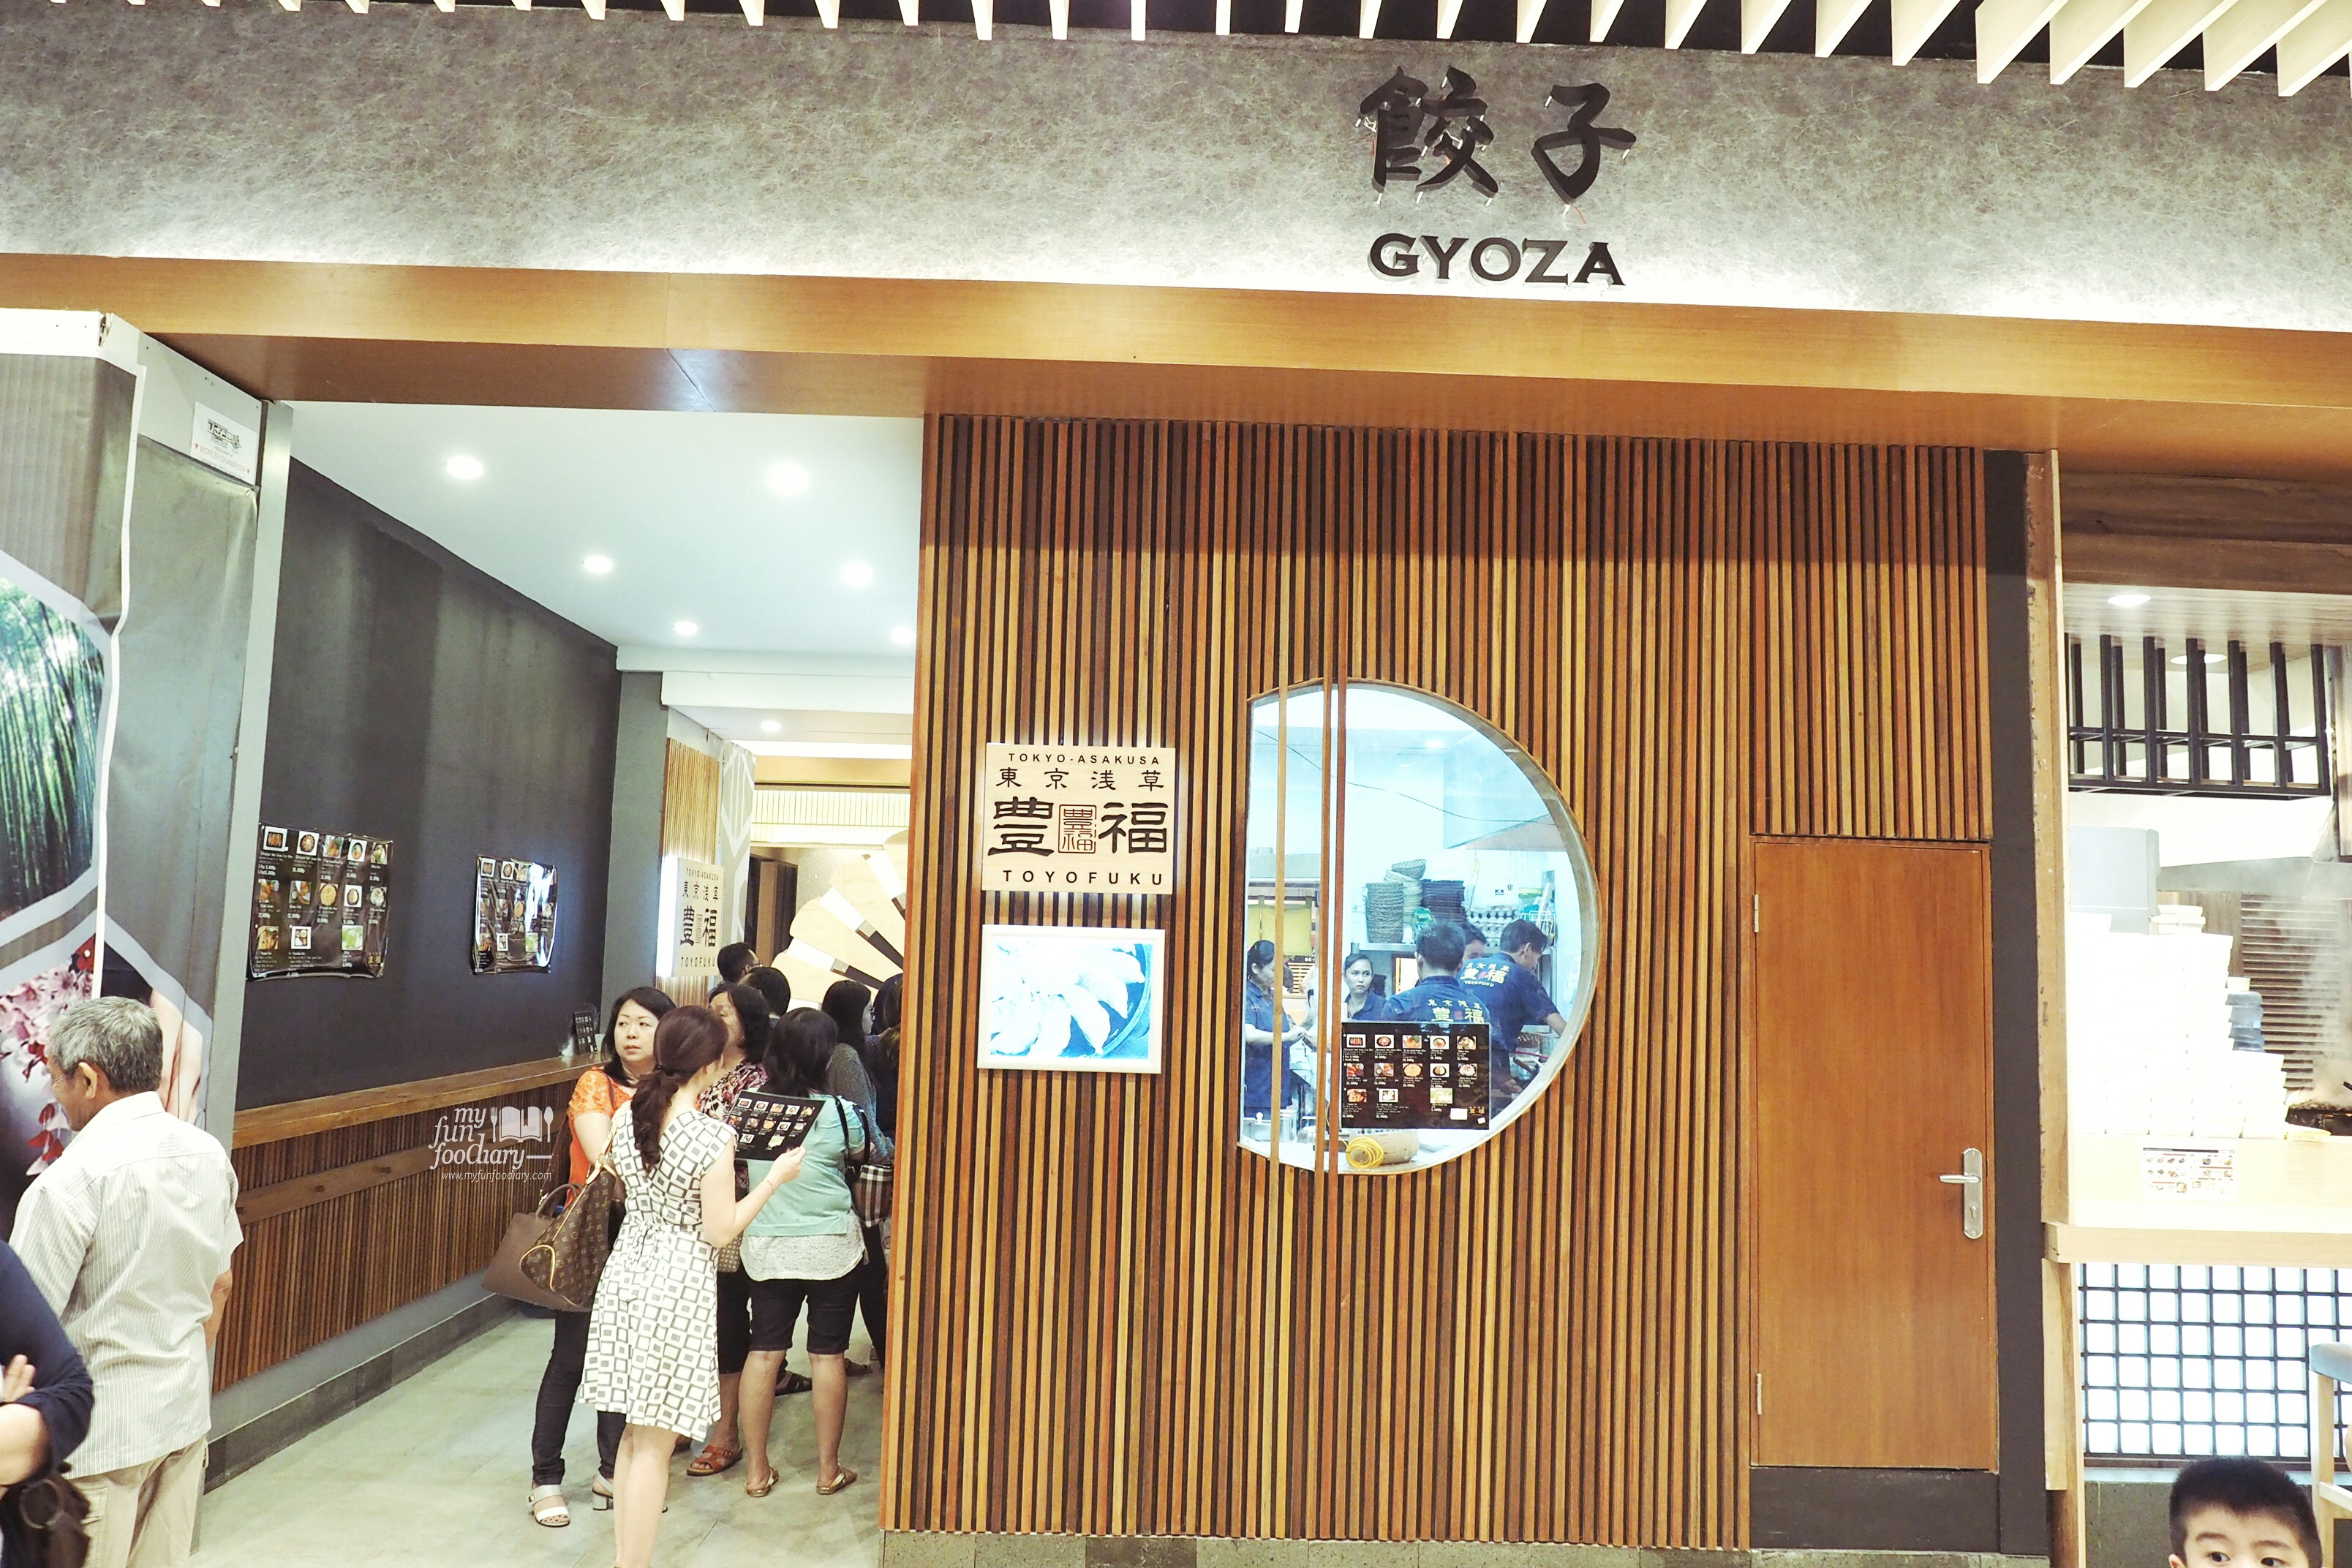 Counter Gyoza Toyofuku at The Food Culture AEON Mall by Myfunfoodiary